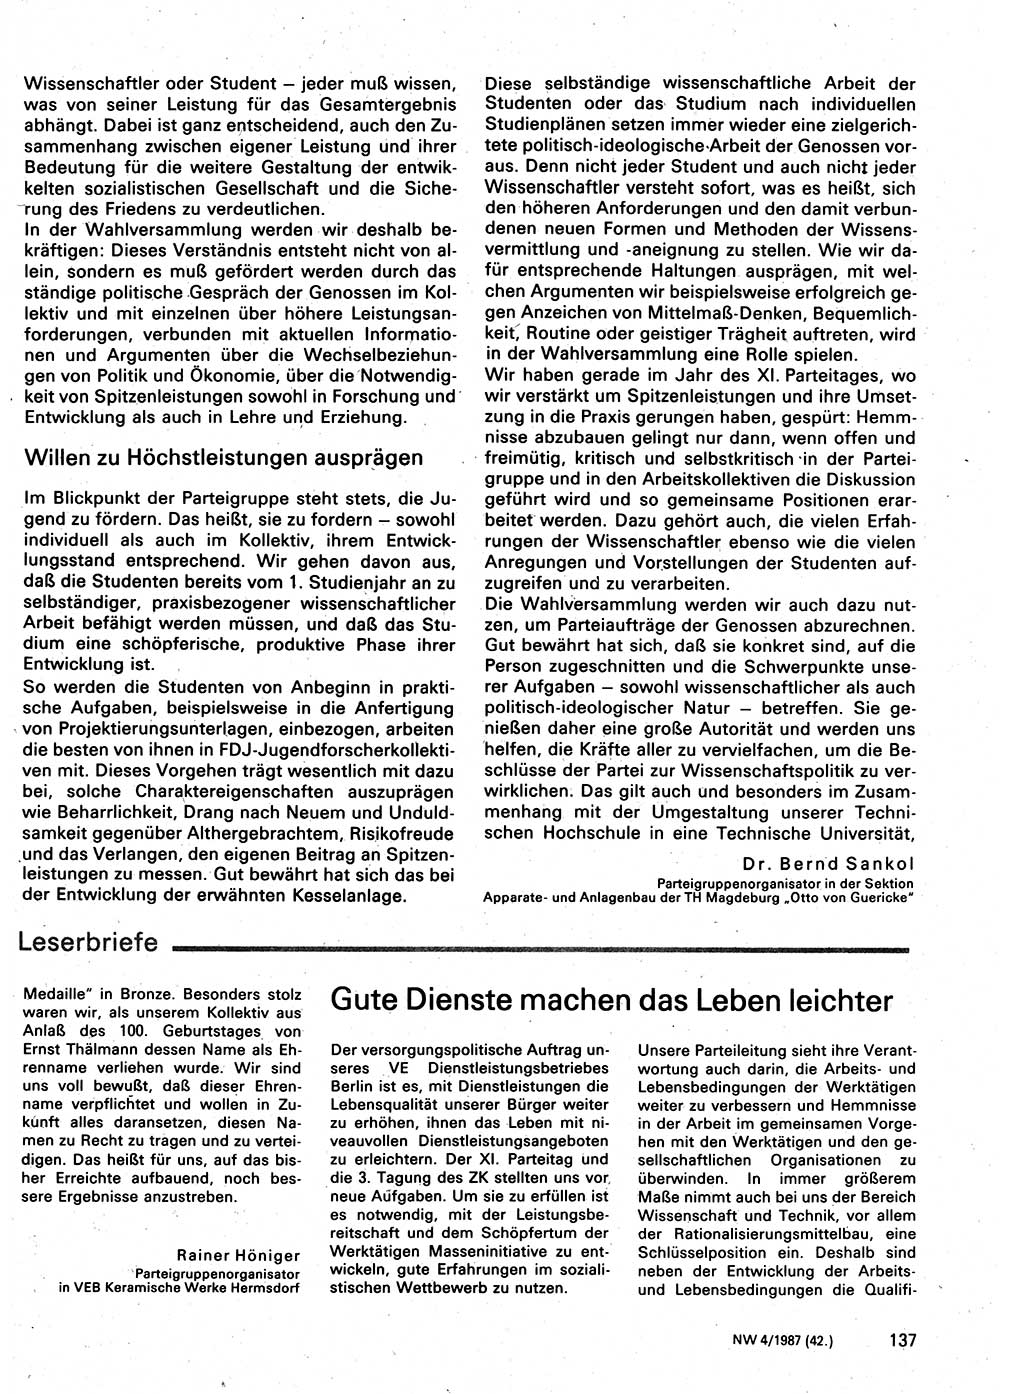 Neuer Weg (NW), Organ des Zentralkomitees (ZK) der SED (Sozialistische Einheitspartei Deutschlands) für Fragen des Parteilebens, 42. Jahrgang [Deutsche Demokratische Republik (DDR)] 1987, Seite 137 (NW ZK SED DDR 1987, S. 137)